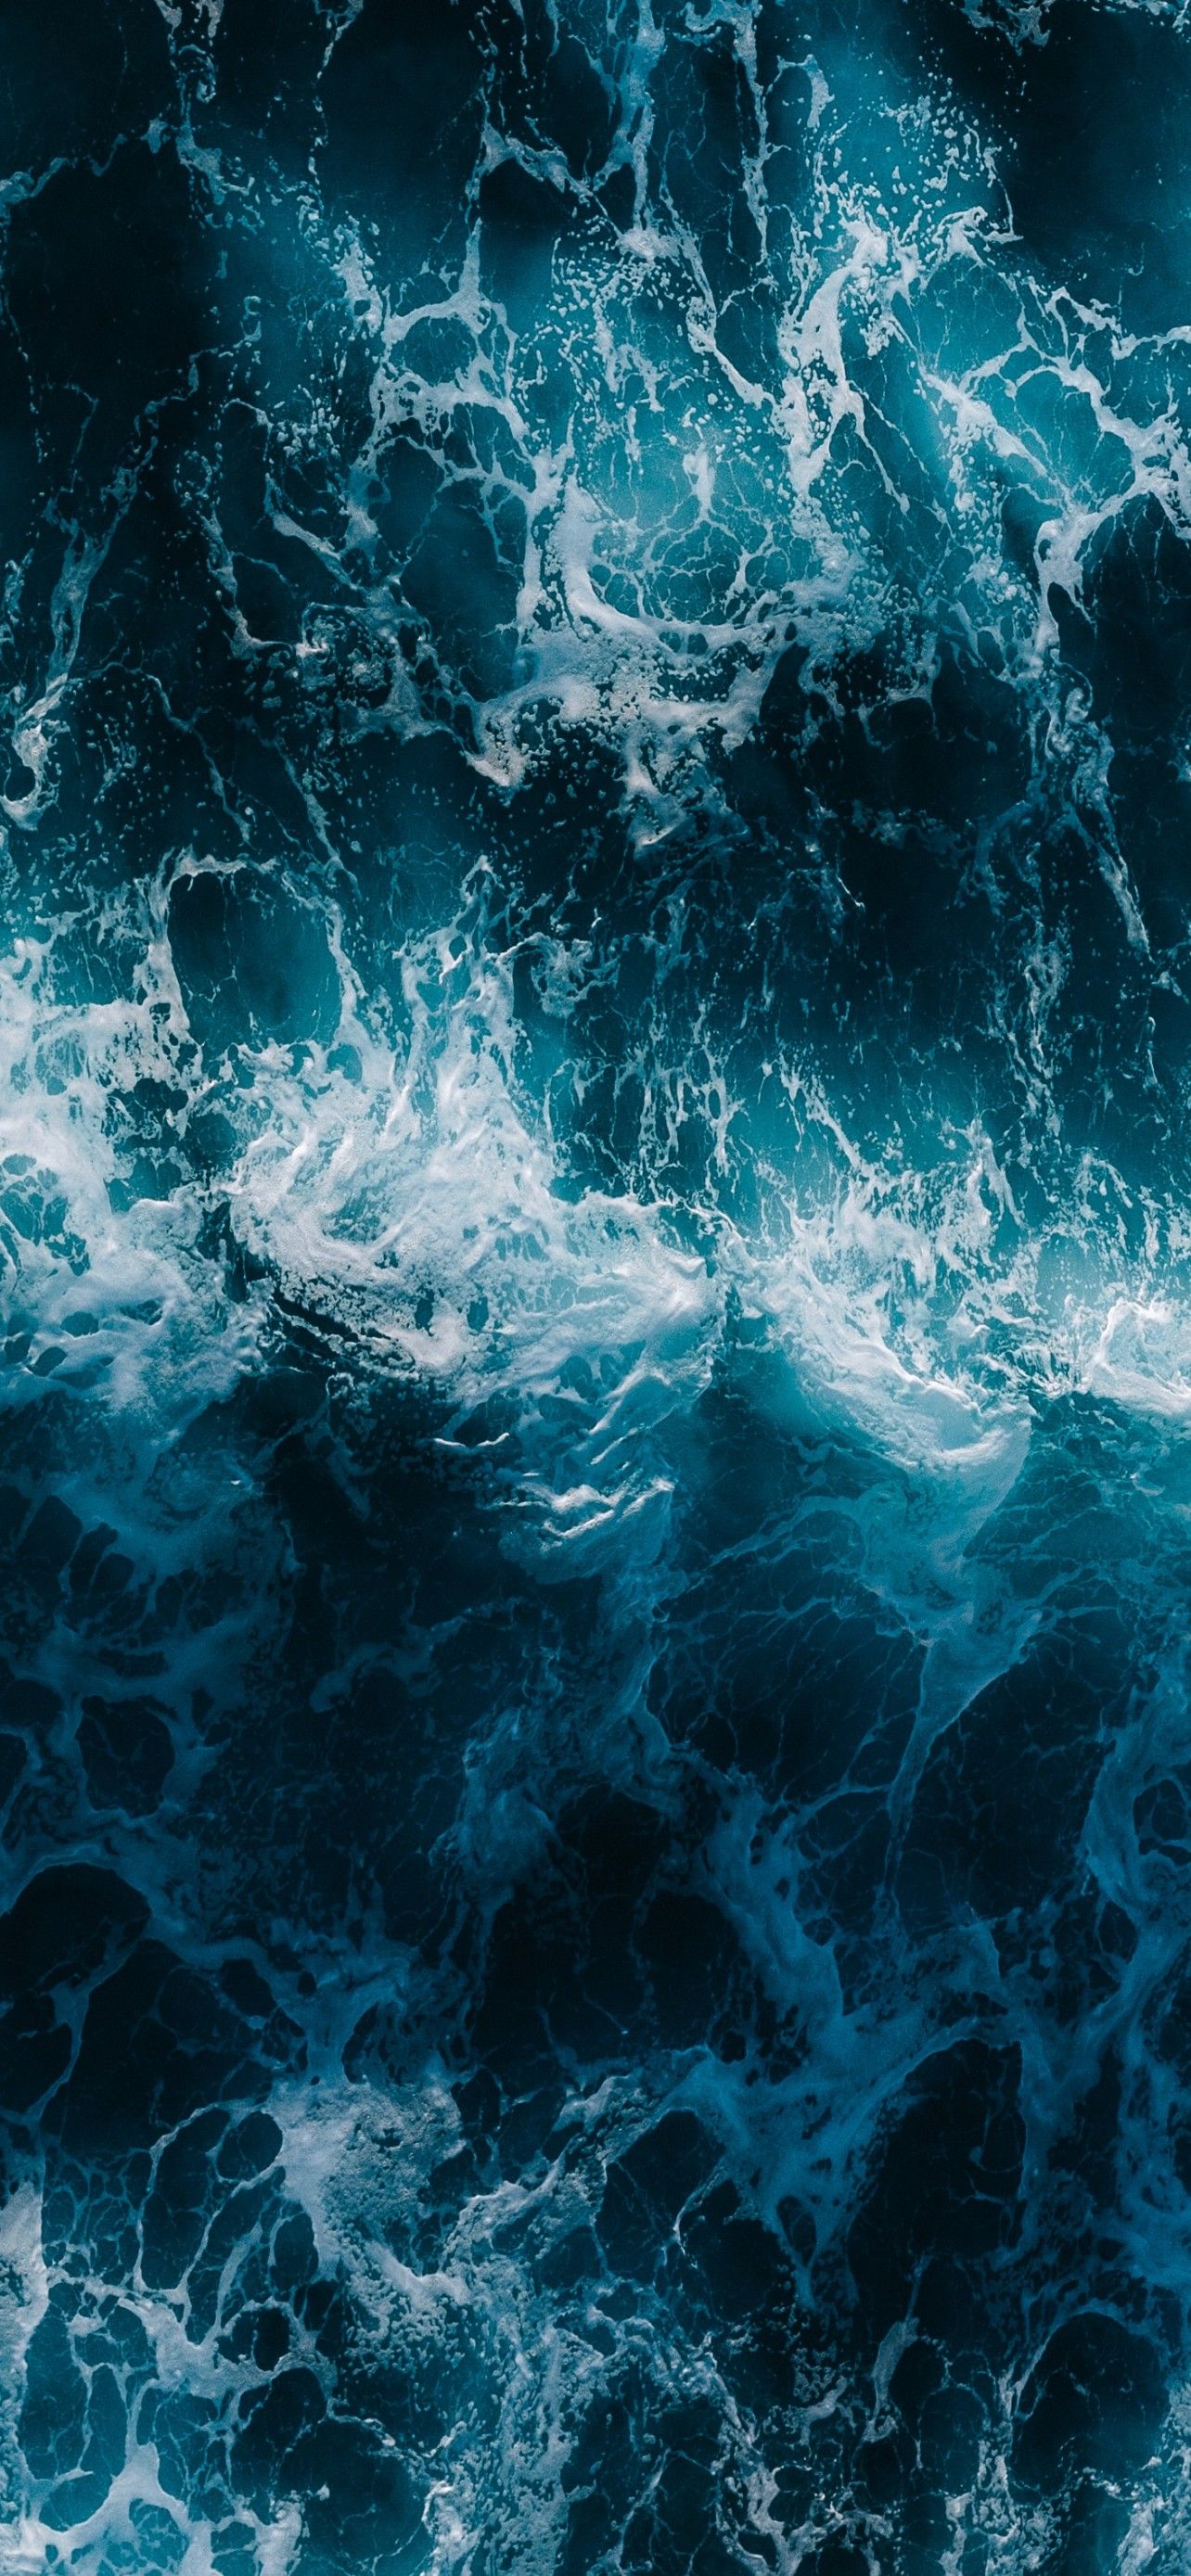 Ocean Waves 4K Wallpaper, Aerial view, Blue Water, Pattern, Sea Waves, 5K, Nature